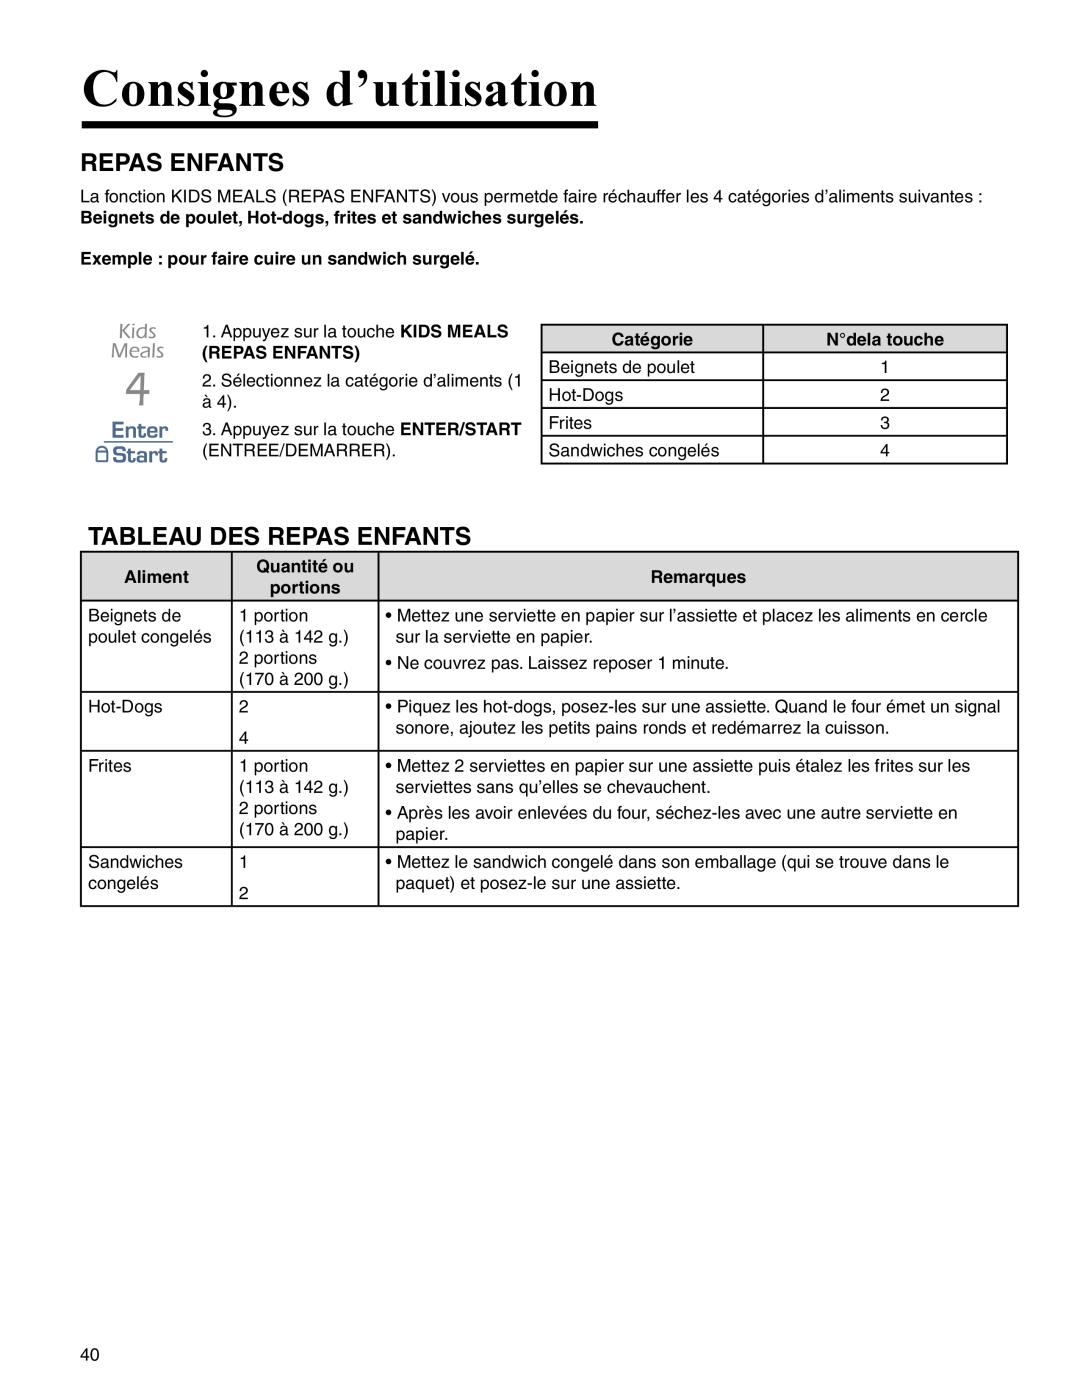 Amana AMC2206BA important safety instructions Tableau Des Repas Enfants, Consignes d’utilisation 